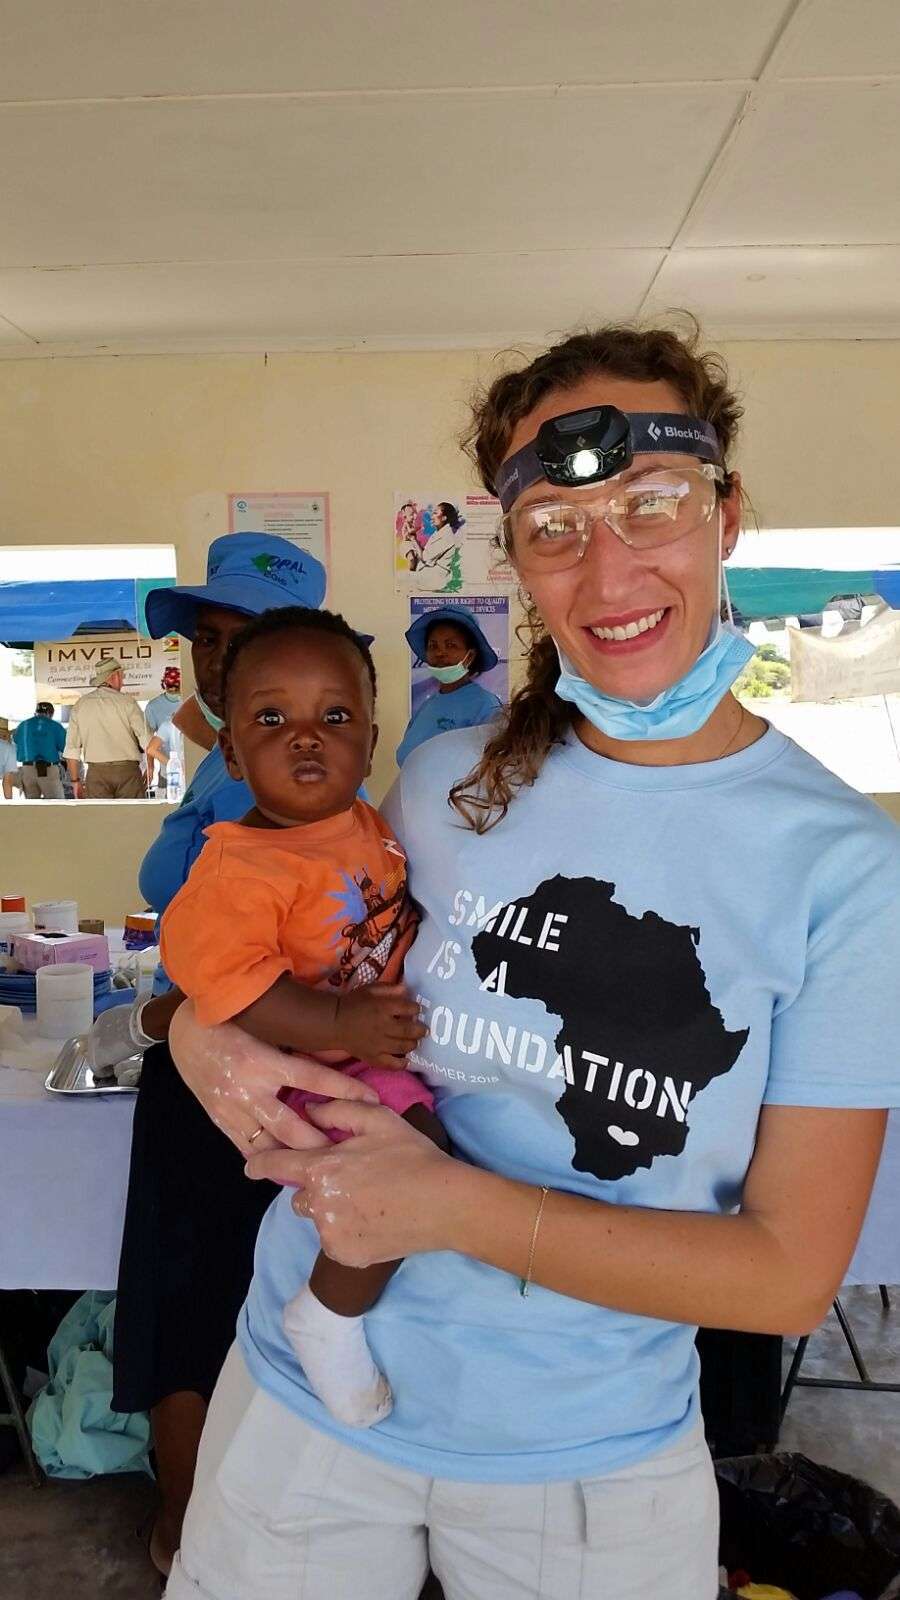 Campaña 2015 con la Fundación Smile is a Foundation en Zimbabwe